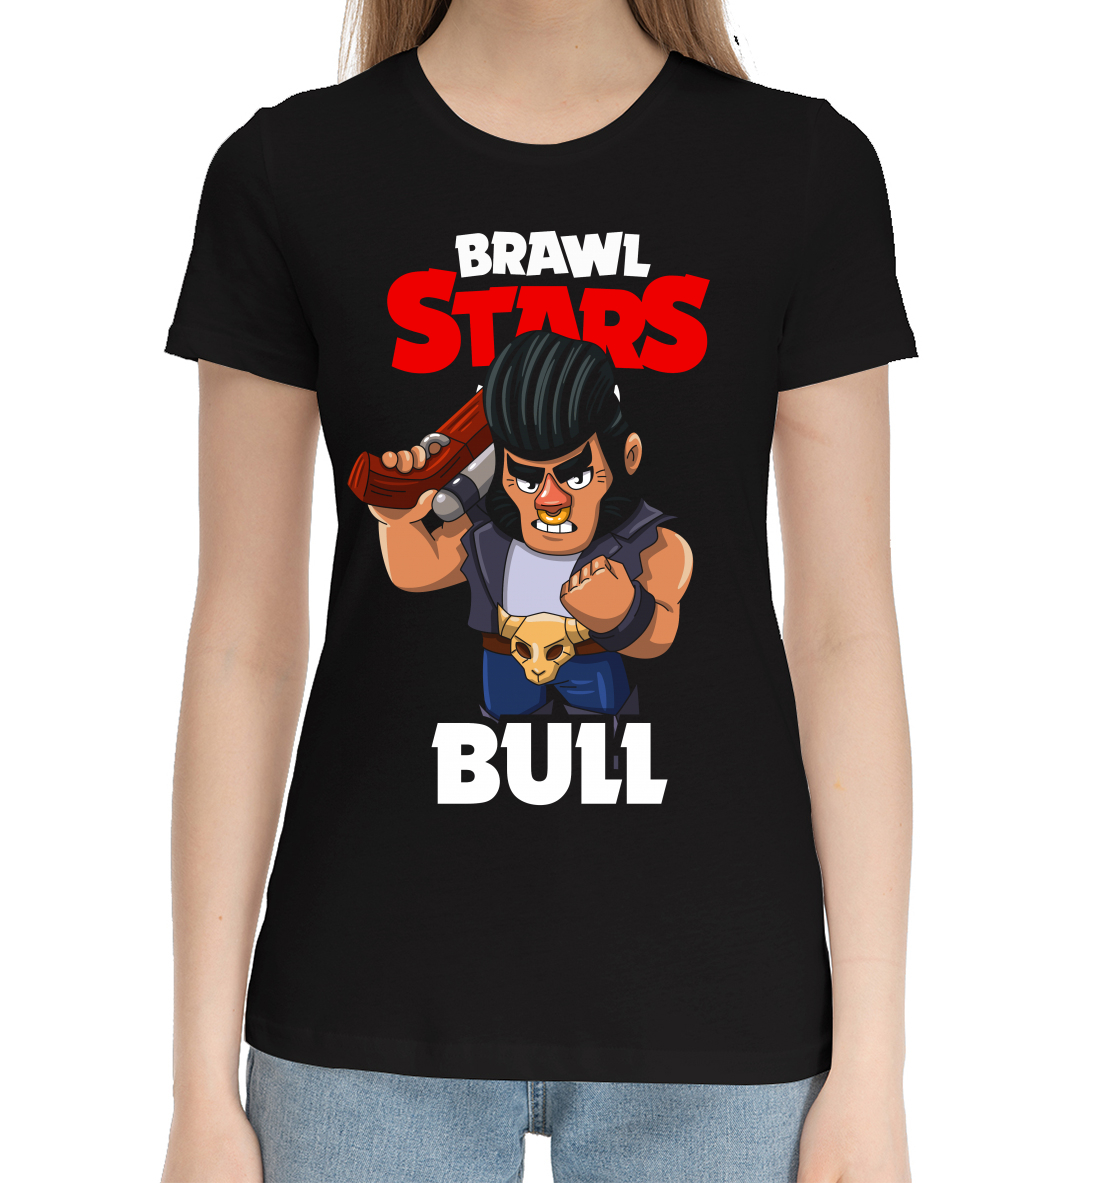 Brawl Stars, Bull